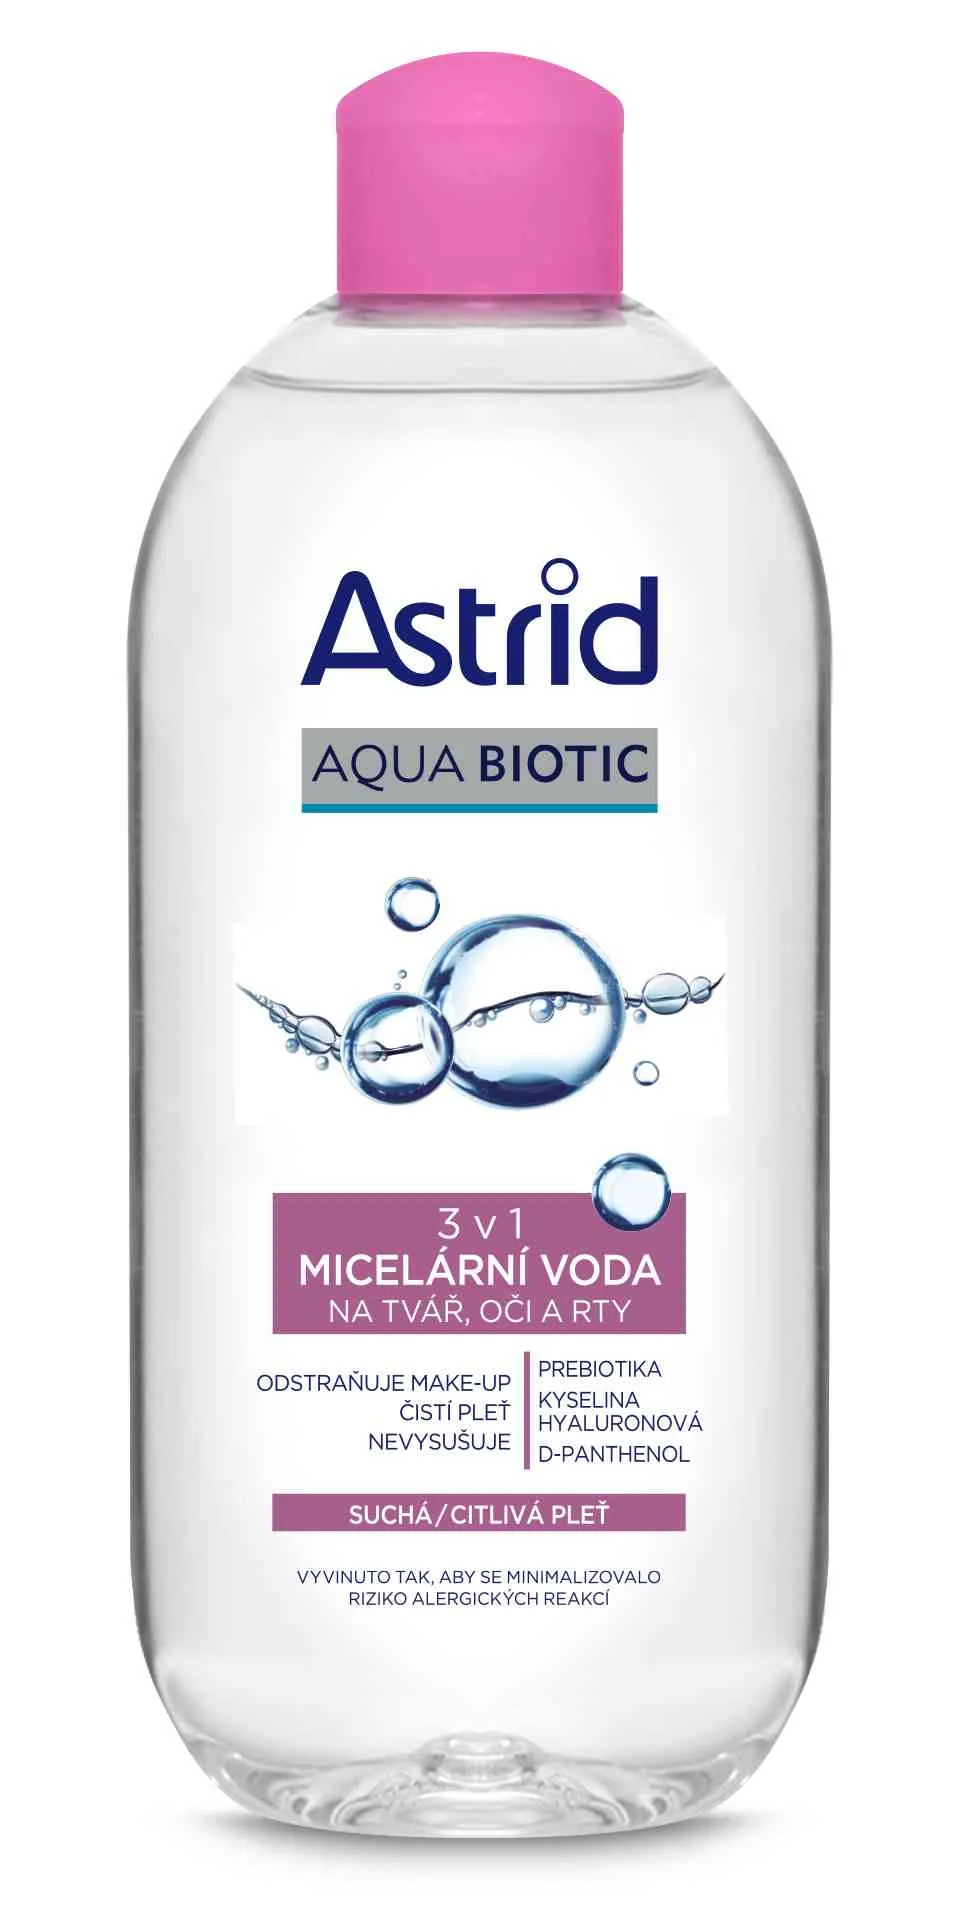 ASTRID AQUA BIOTIC Micelárna voda 3v1 pre suchú a citlivú pleť 400 ml 1×400 ml, micelárna voda